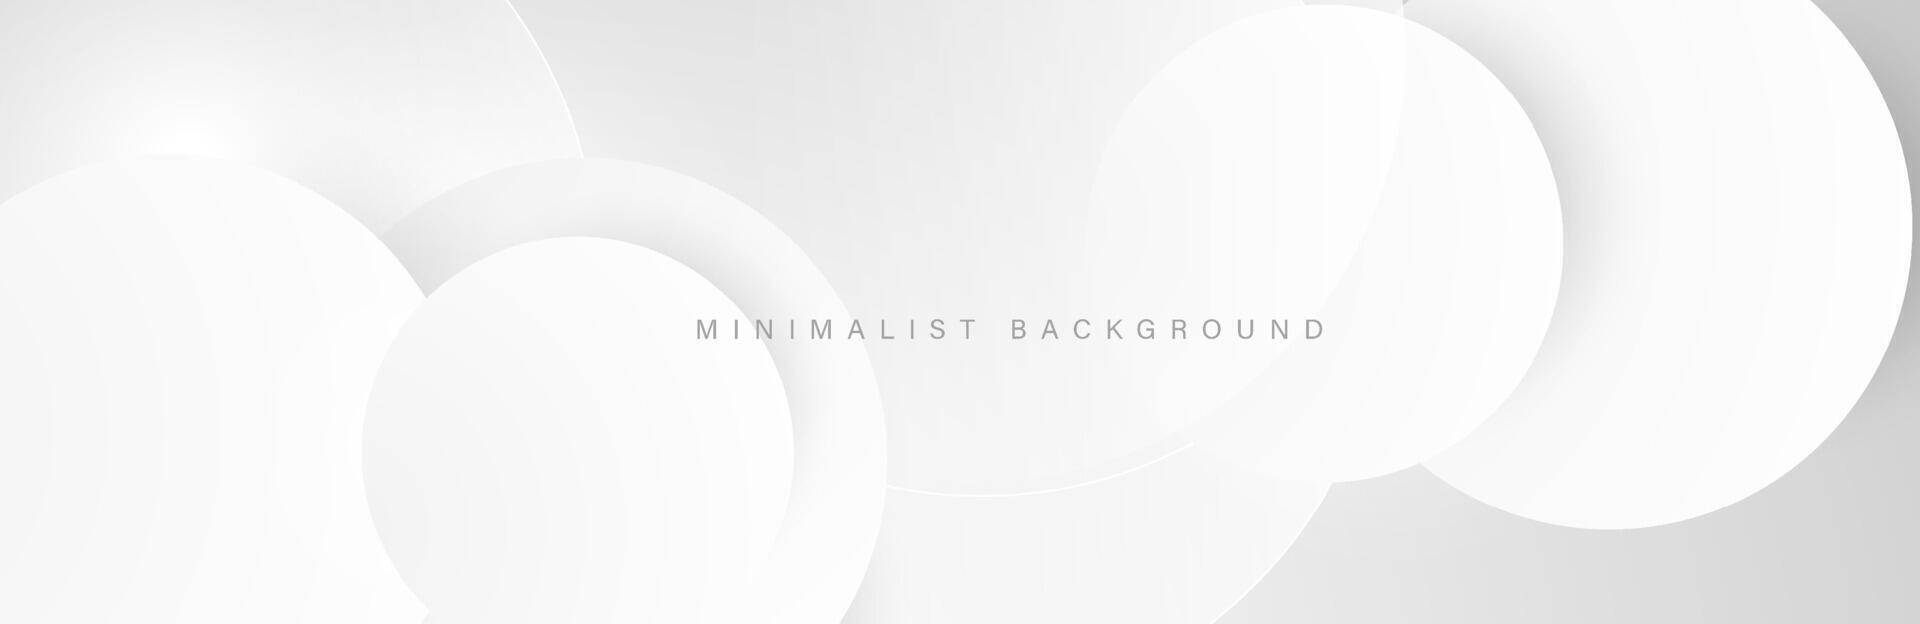 abstrakt minimalistisk vit bakgrund med cirkulär element vektor